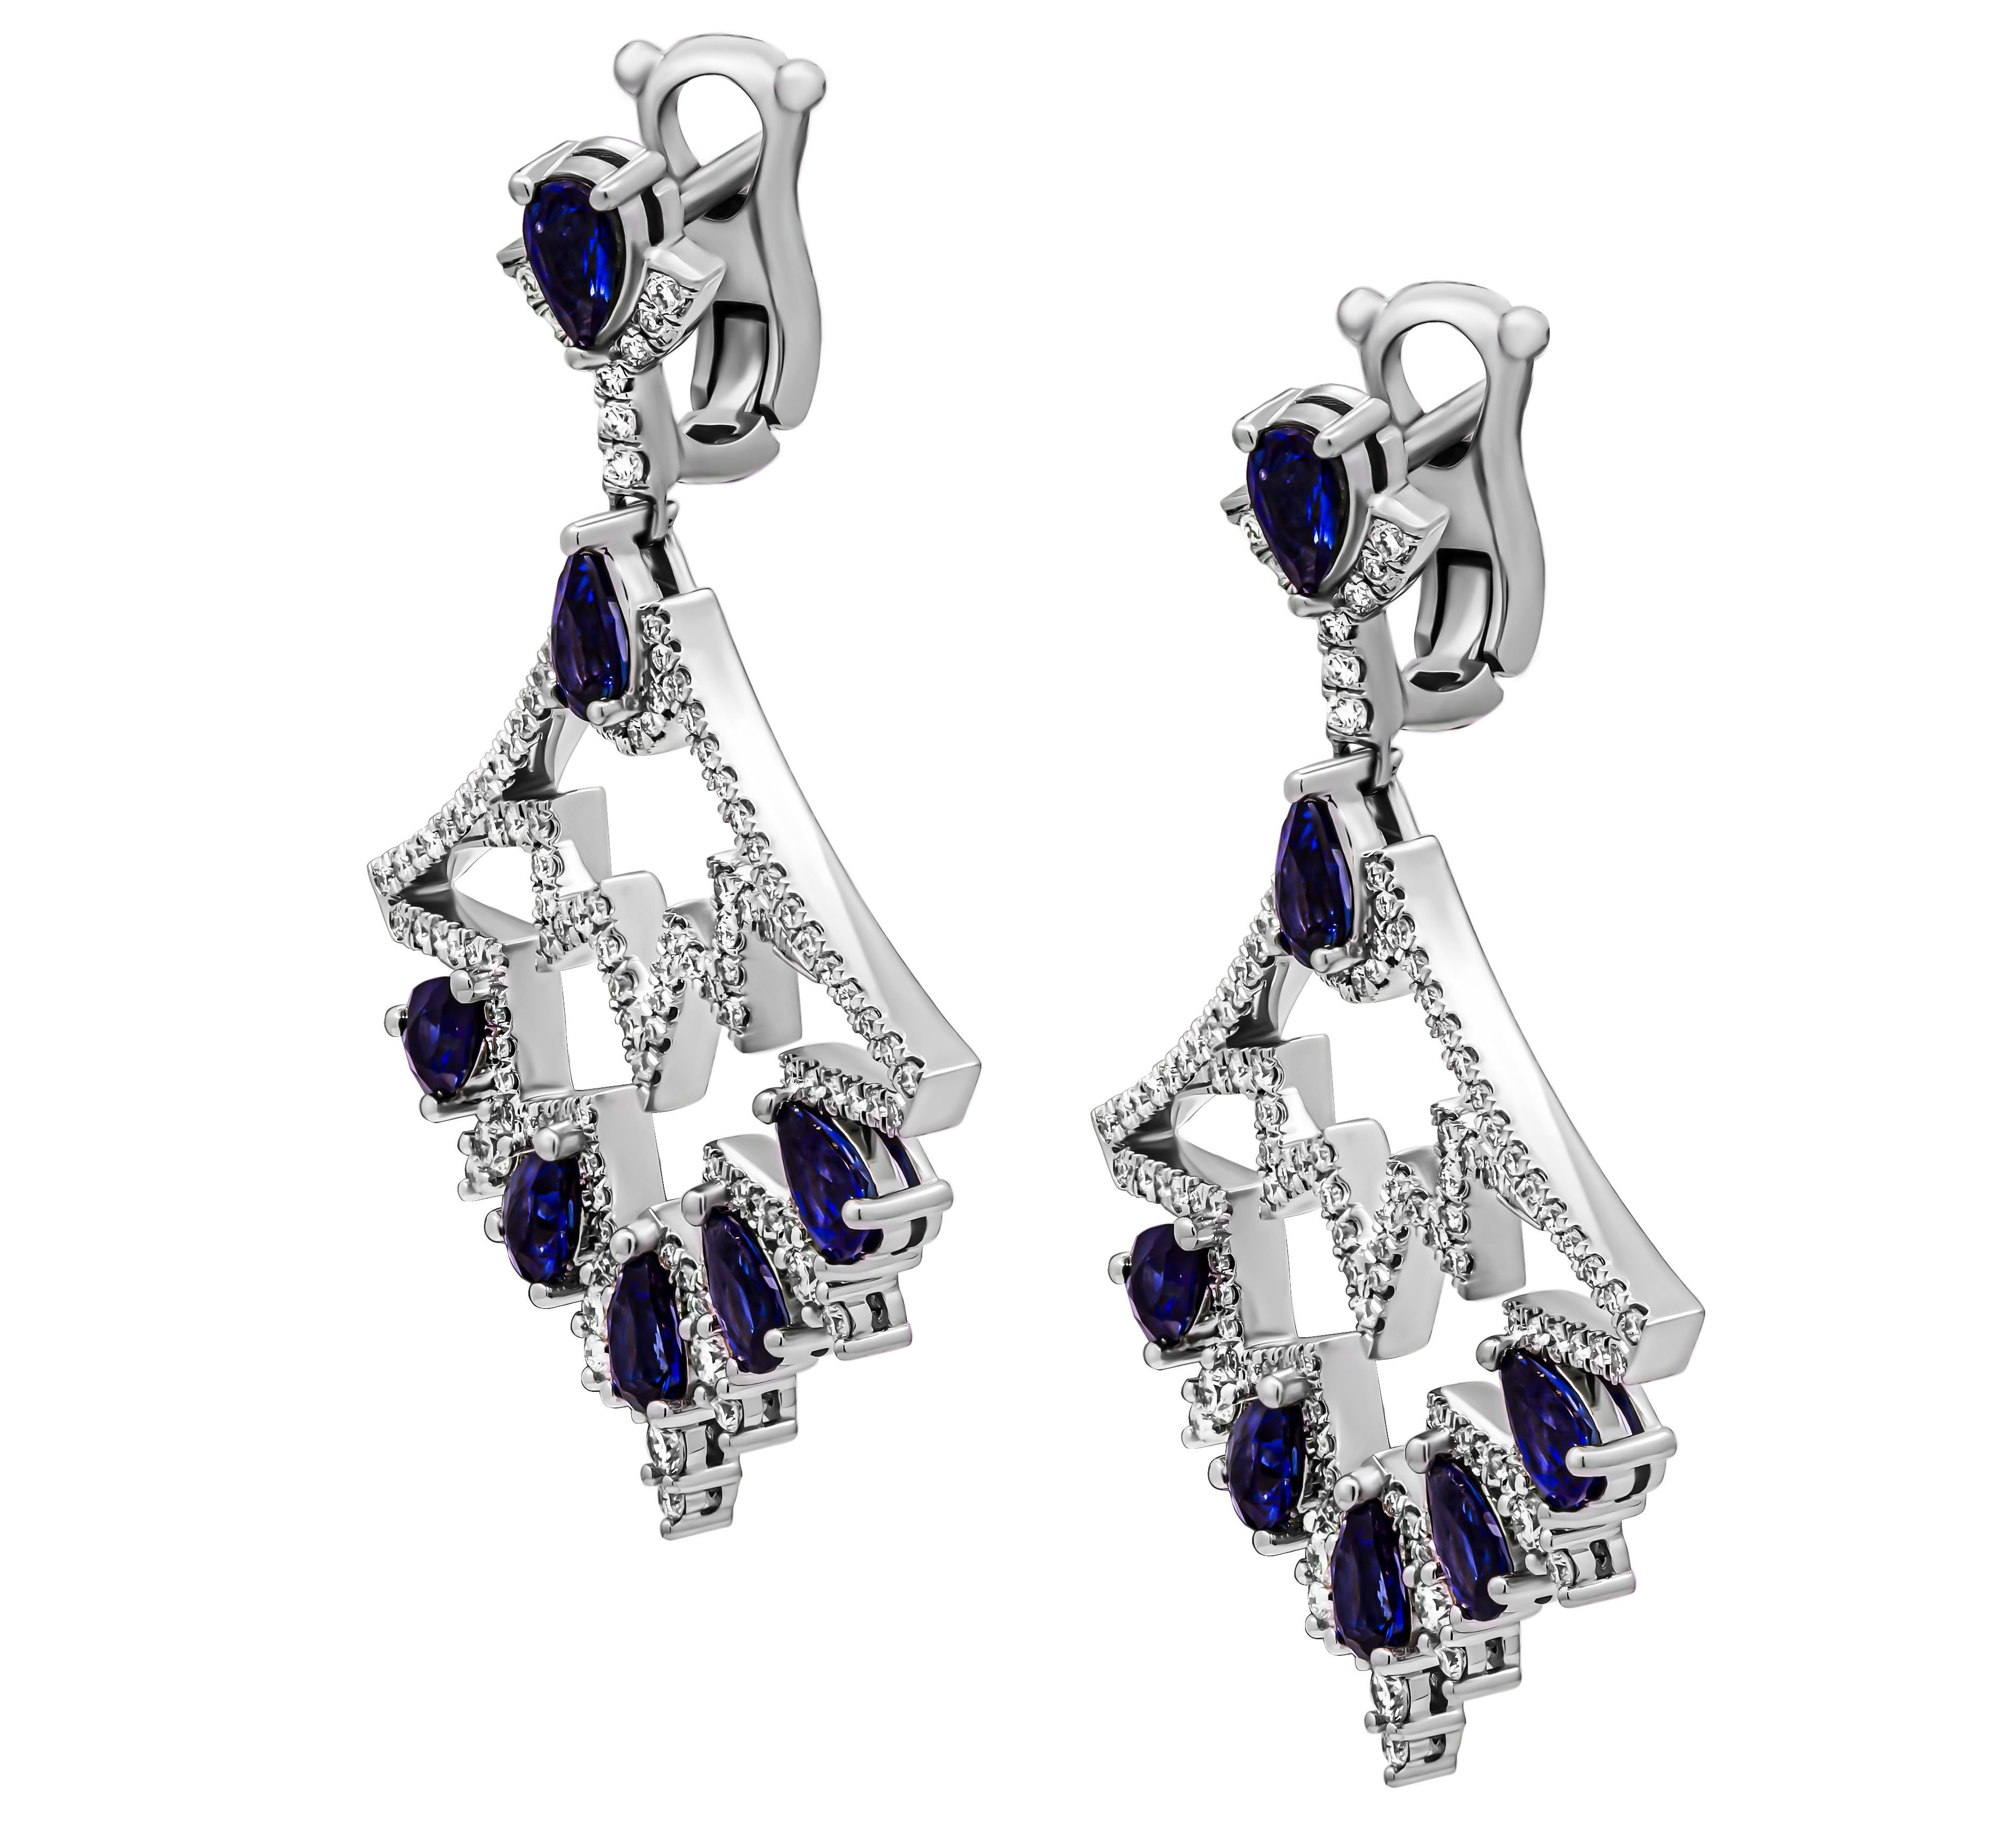 ntroducing our stunning Blue Sapphire Chandelier Diamond Earrings, crafts with meticulous attention to detail in lustrous 18K white gold. Ces boucles d'oreilles sont une véritable incarnation de la sophistication et du glamour, présentant un